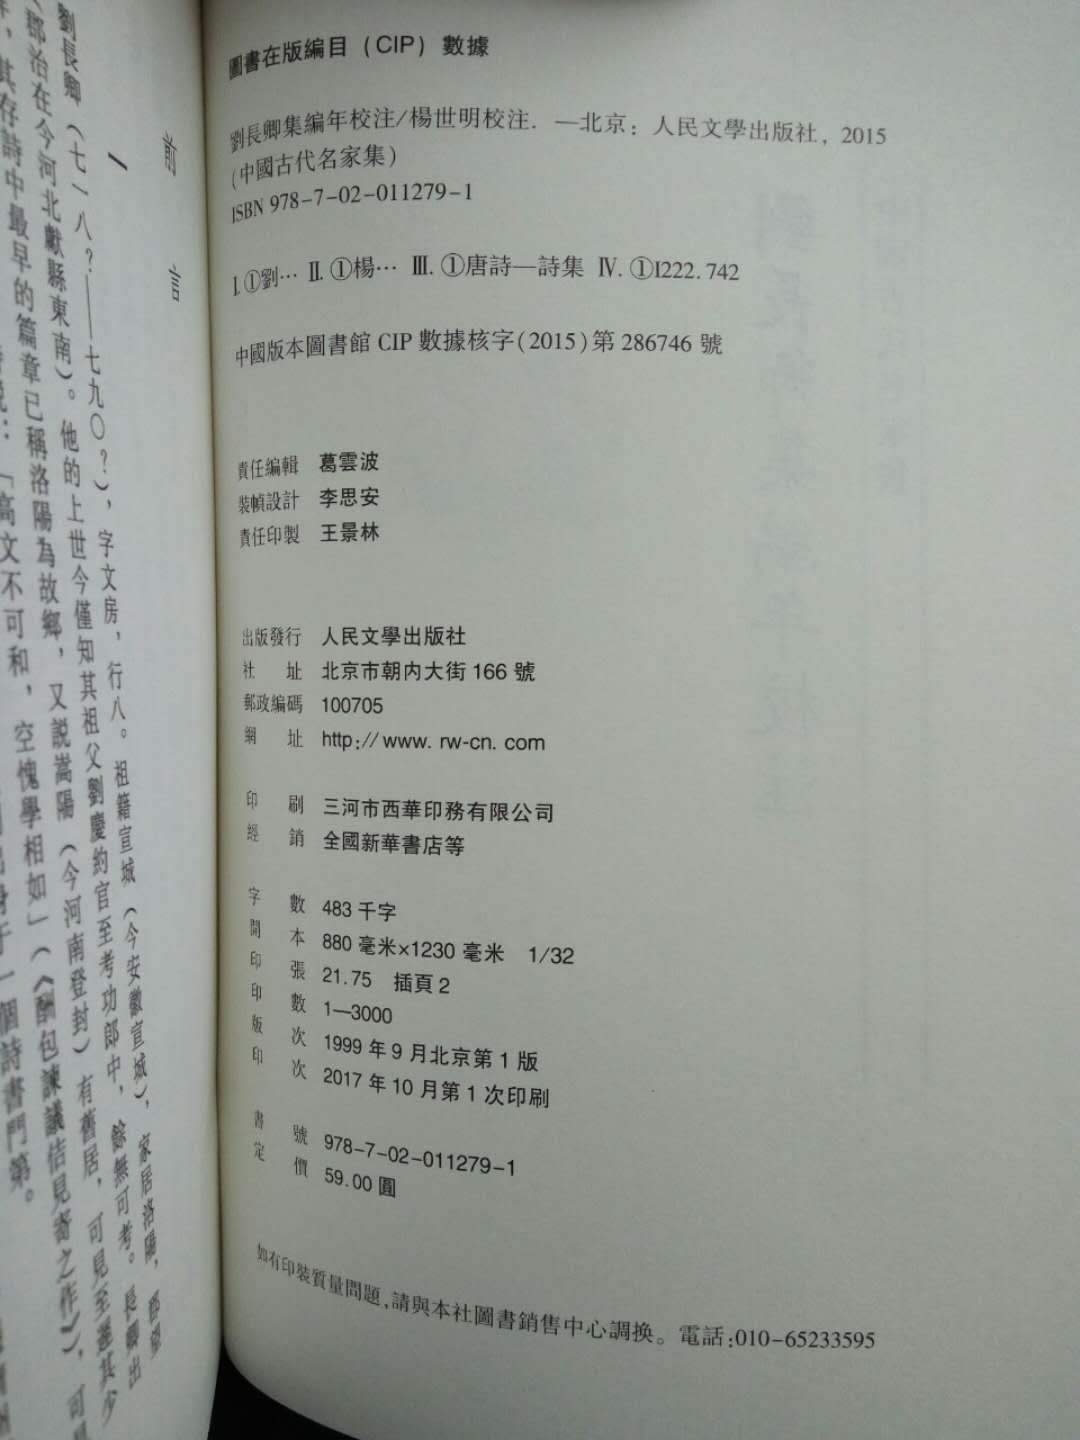 此书终于重印，沒有重印后的前言后记，不对比旧版未必知修订所在。可与刚重印的中华书局版参看。